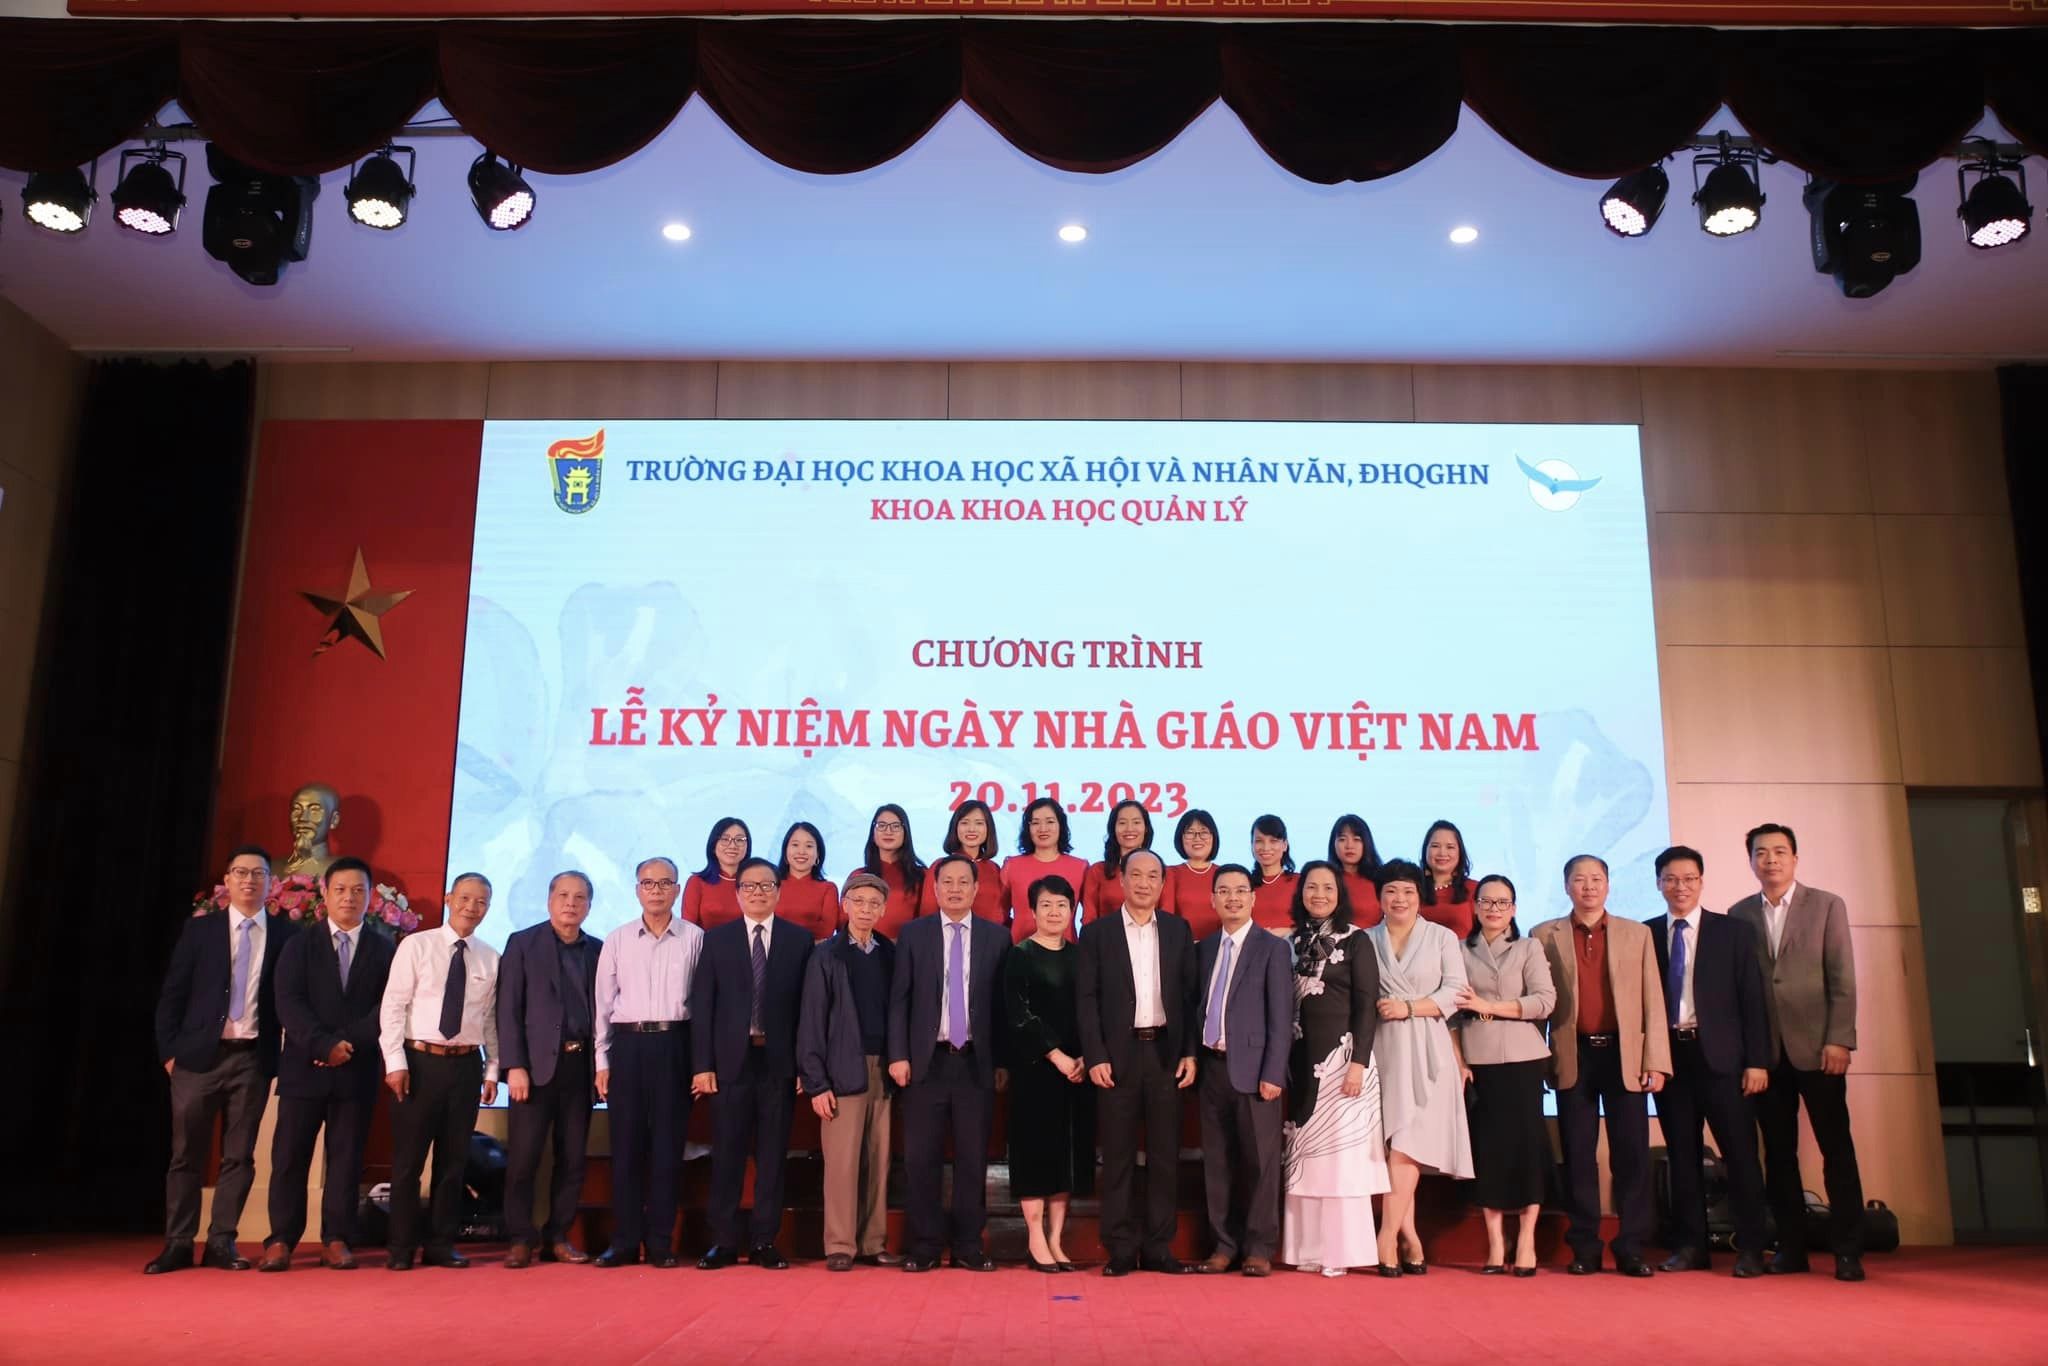 Lễ kỷ niệm ngày Nhà giáo Việt Nam năm 2023 - Khoa Khoa học quản lý